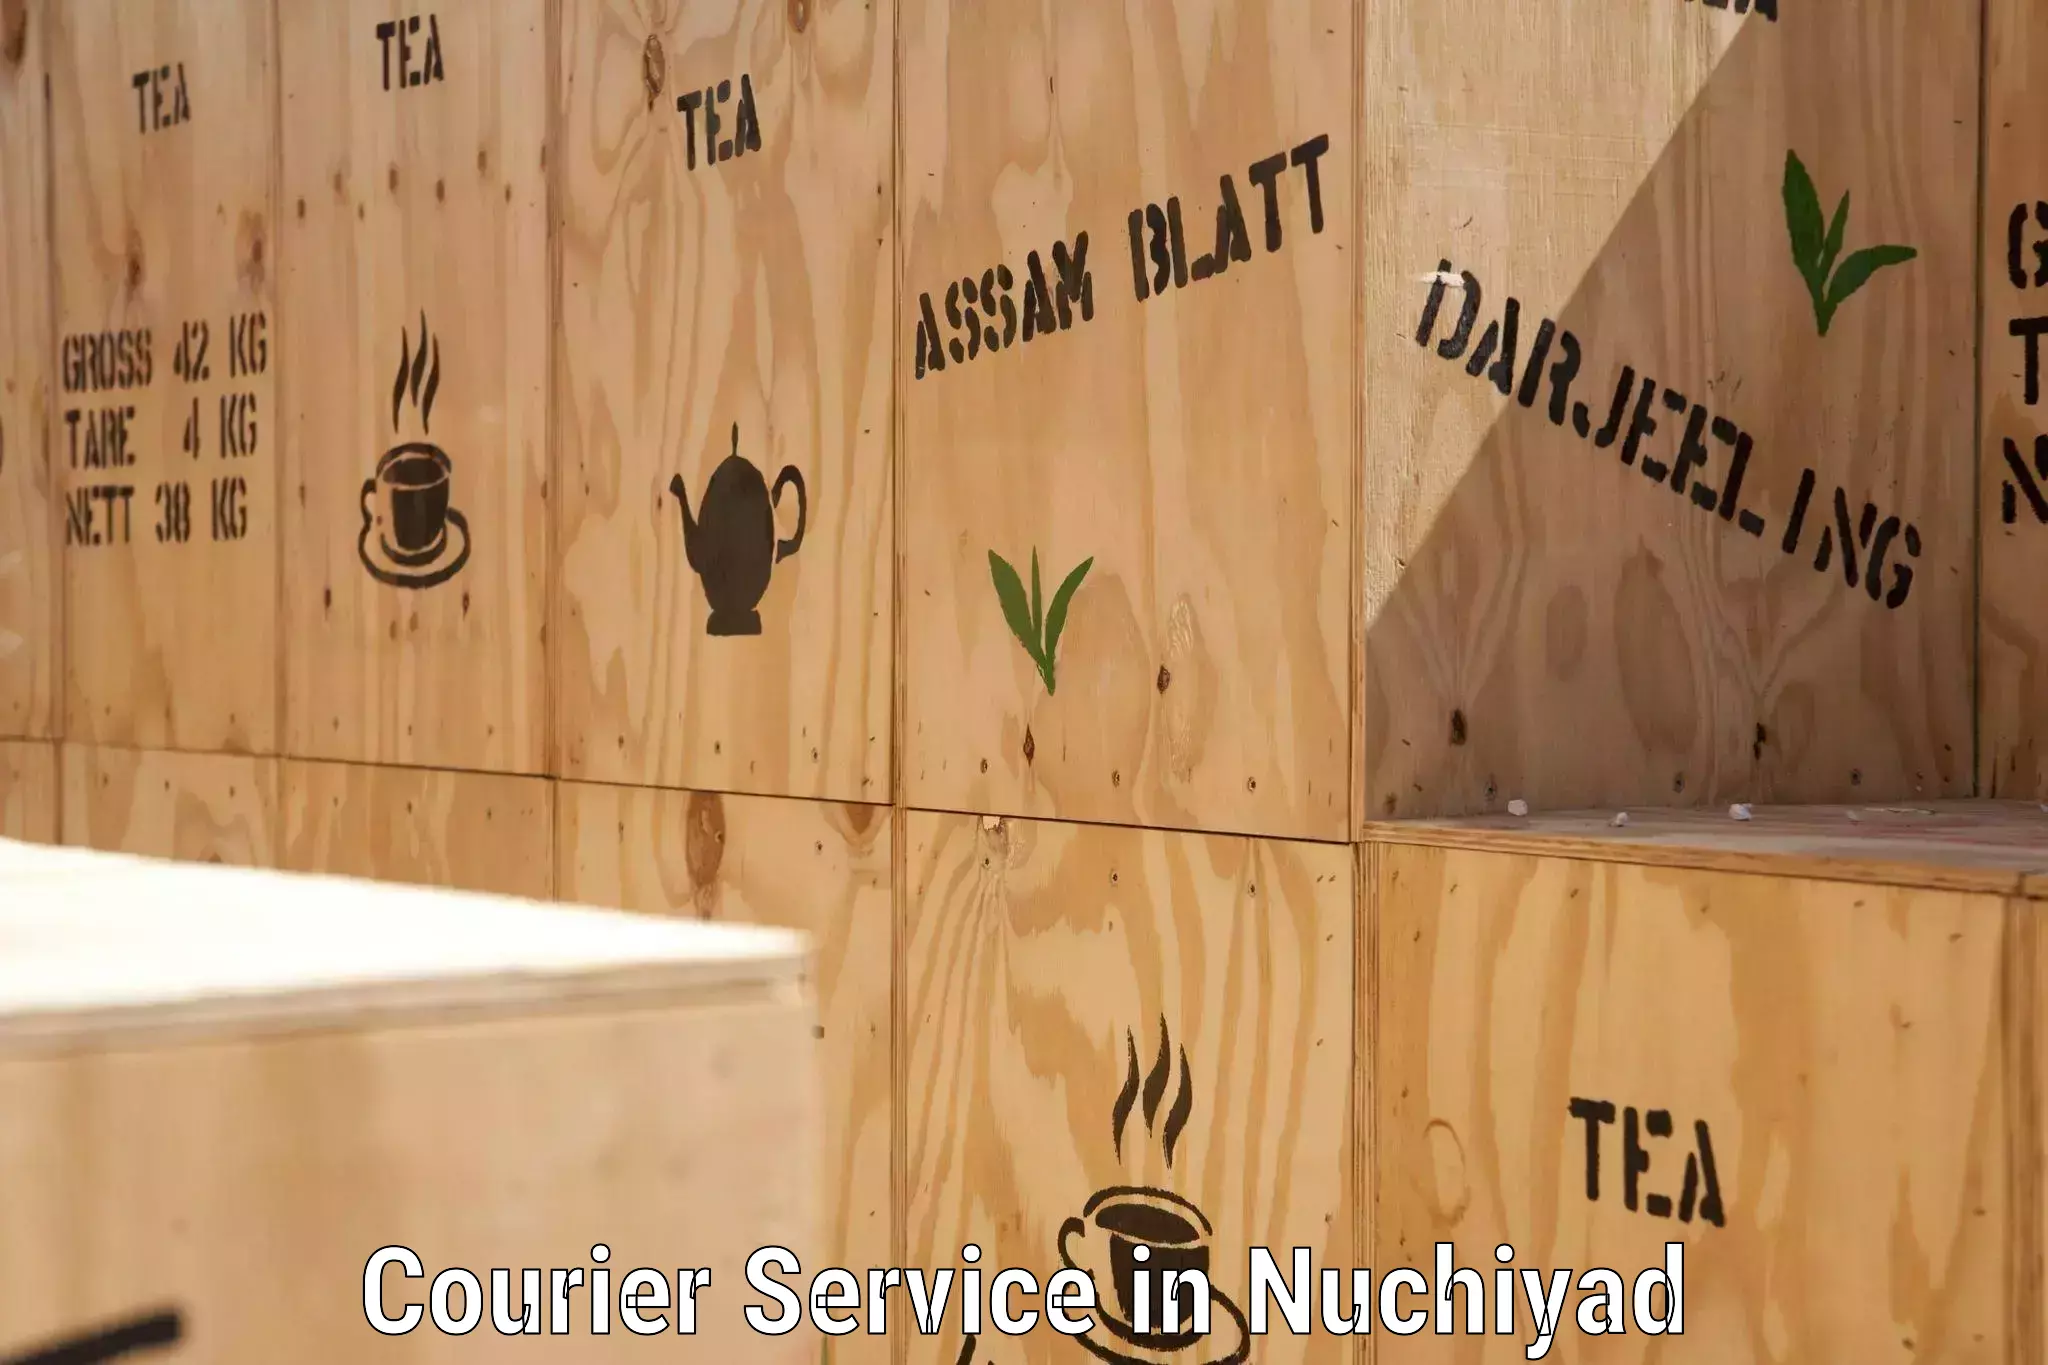 Weekend courier service in Nuchiyad